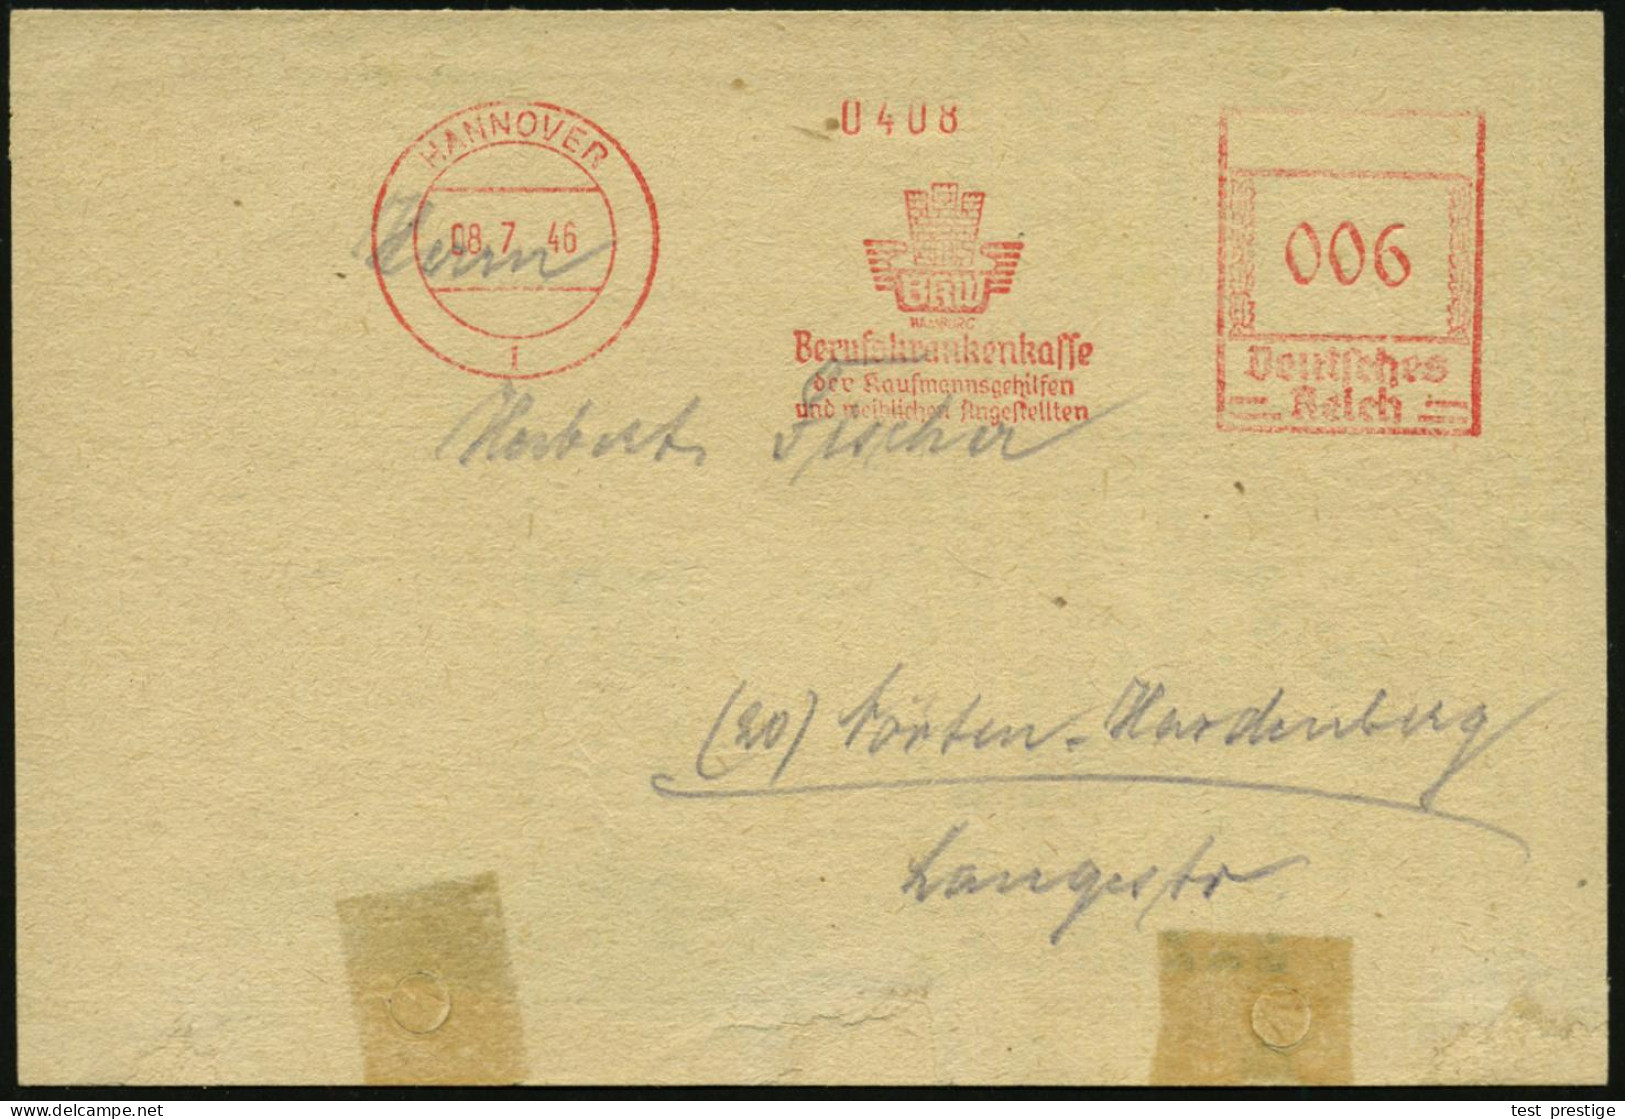 HANNOVER/ BKW/ HAMBURG/ Berufskrankenkasse/ Der Kaufmannsgehilfen/ U.weiblichen Angestellten 1946 (8.7.) Seltener, Aptie - Otros